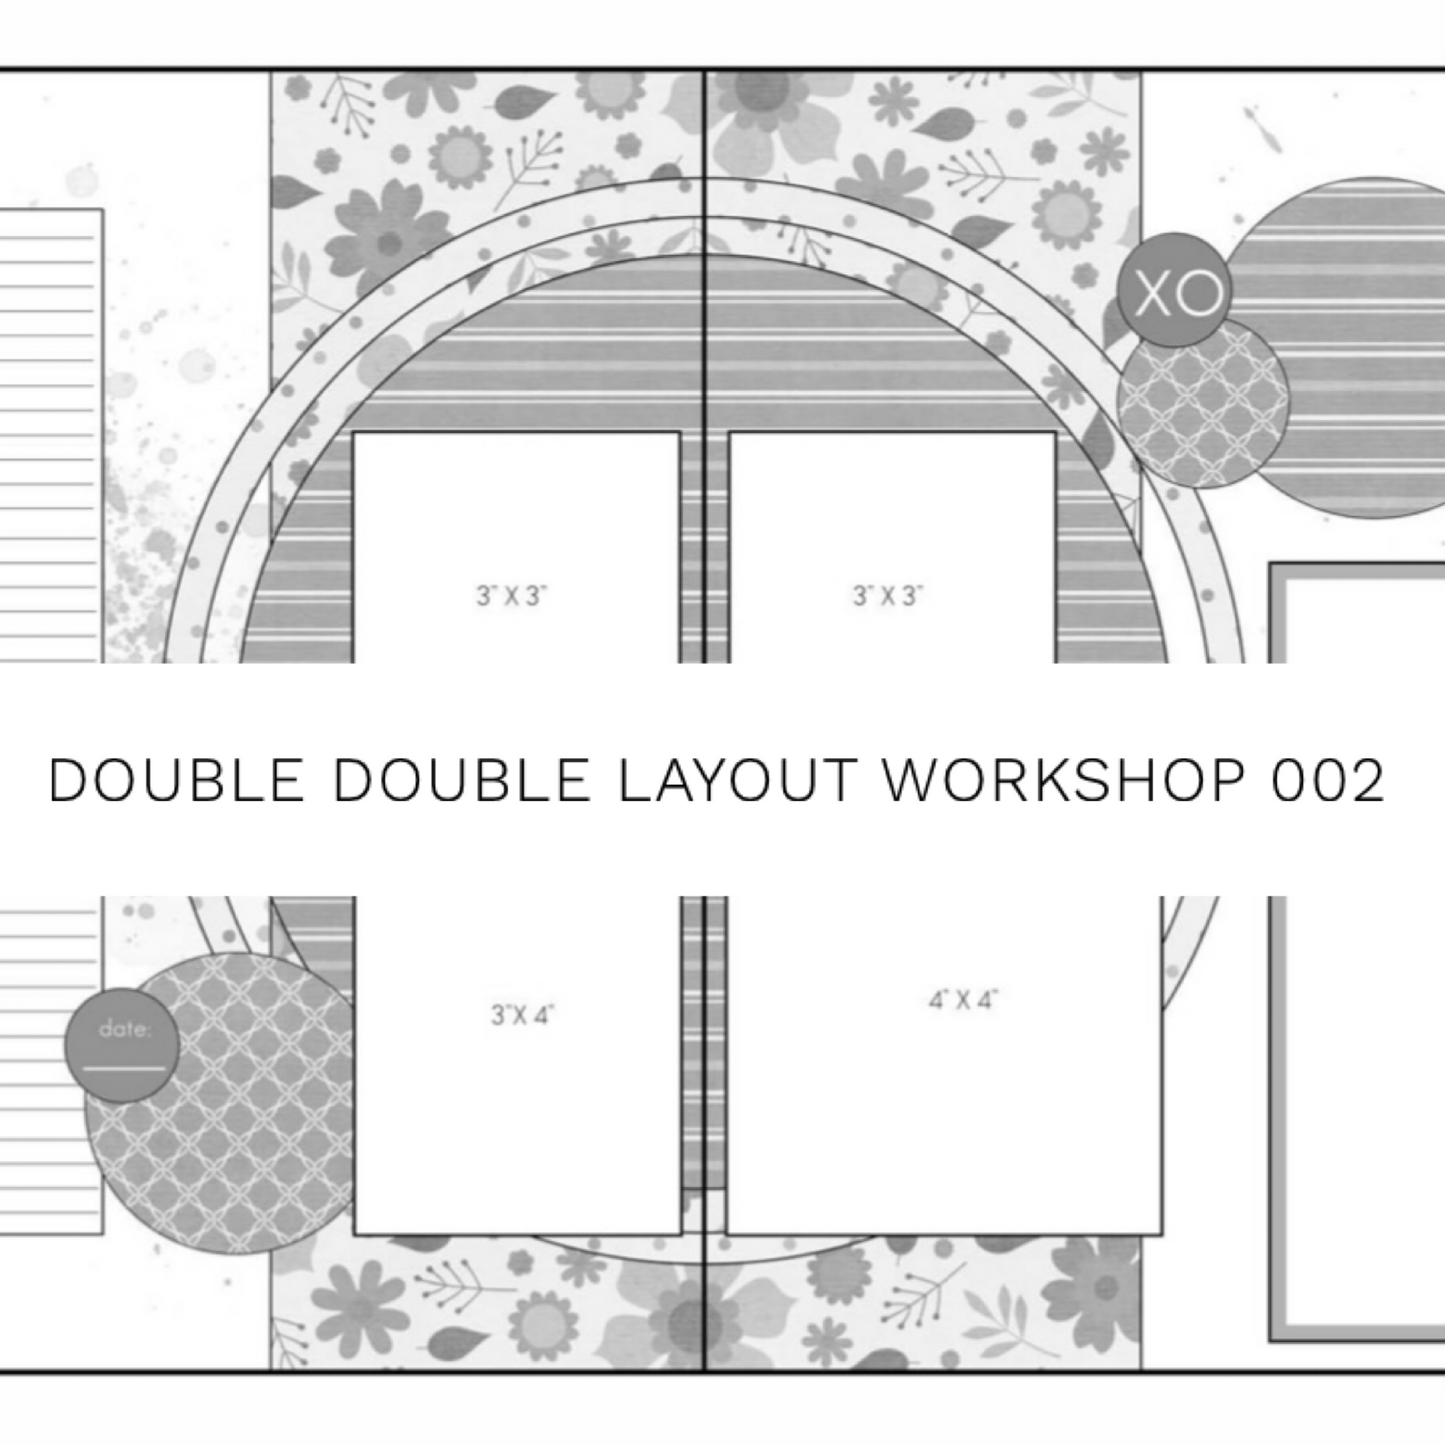 Double Double Layout Workshop 002